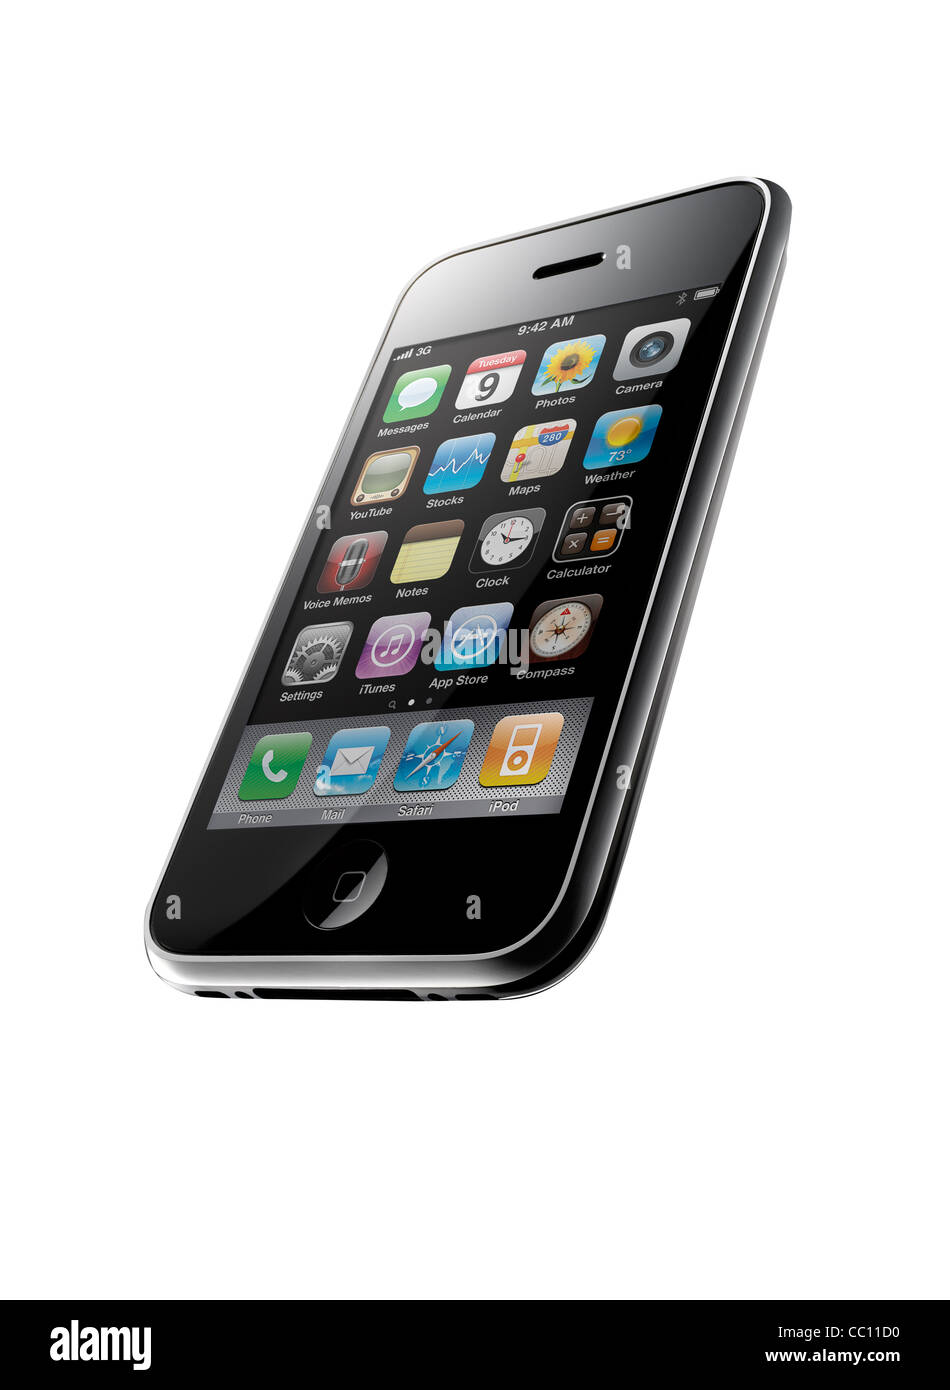 Un iPhone 3GS shot presso un interessante angolo, su sfondo bianco Foto Stock